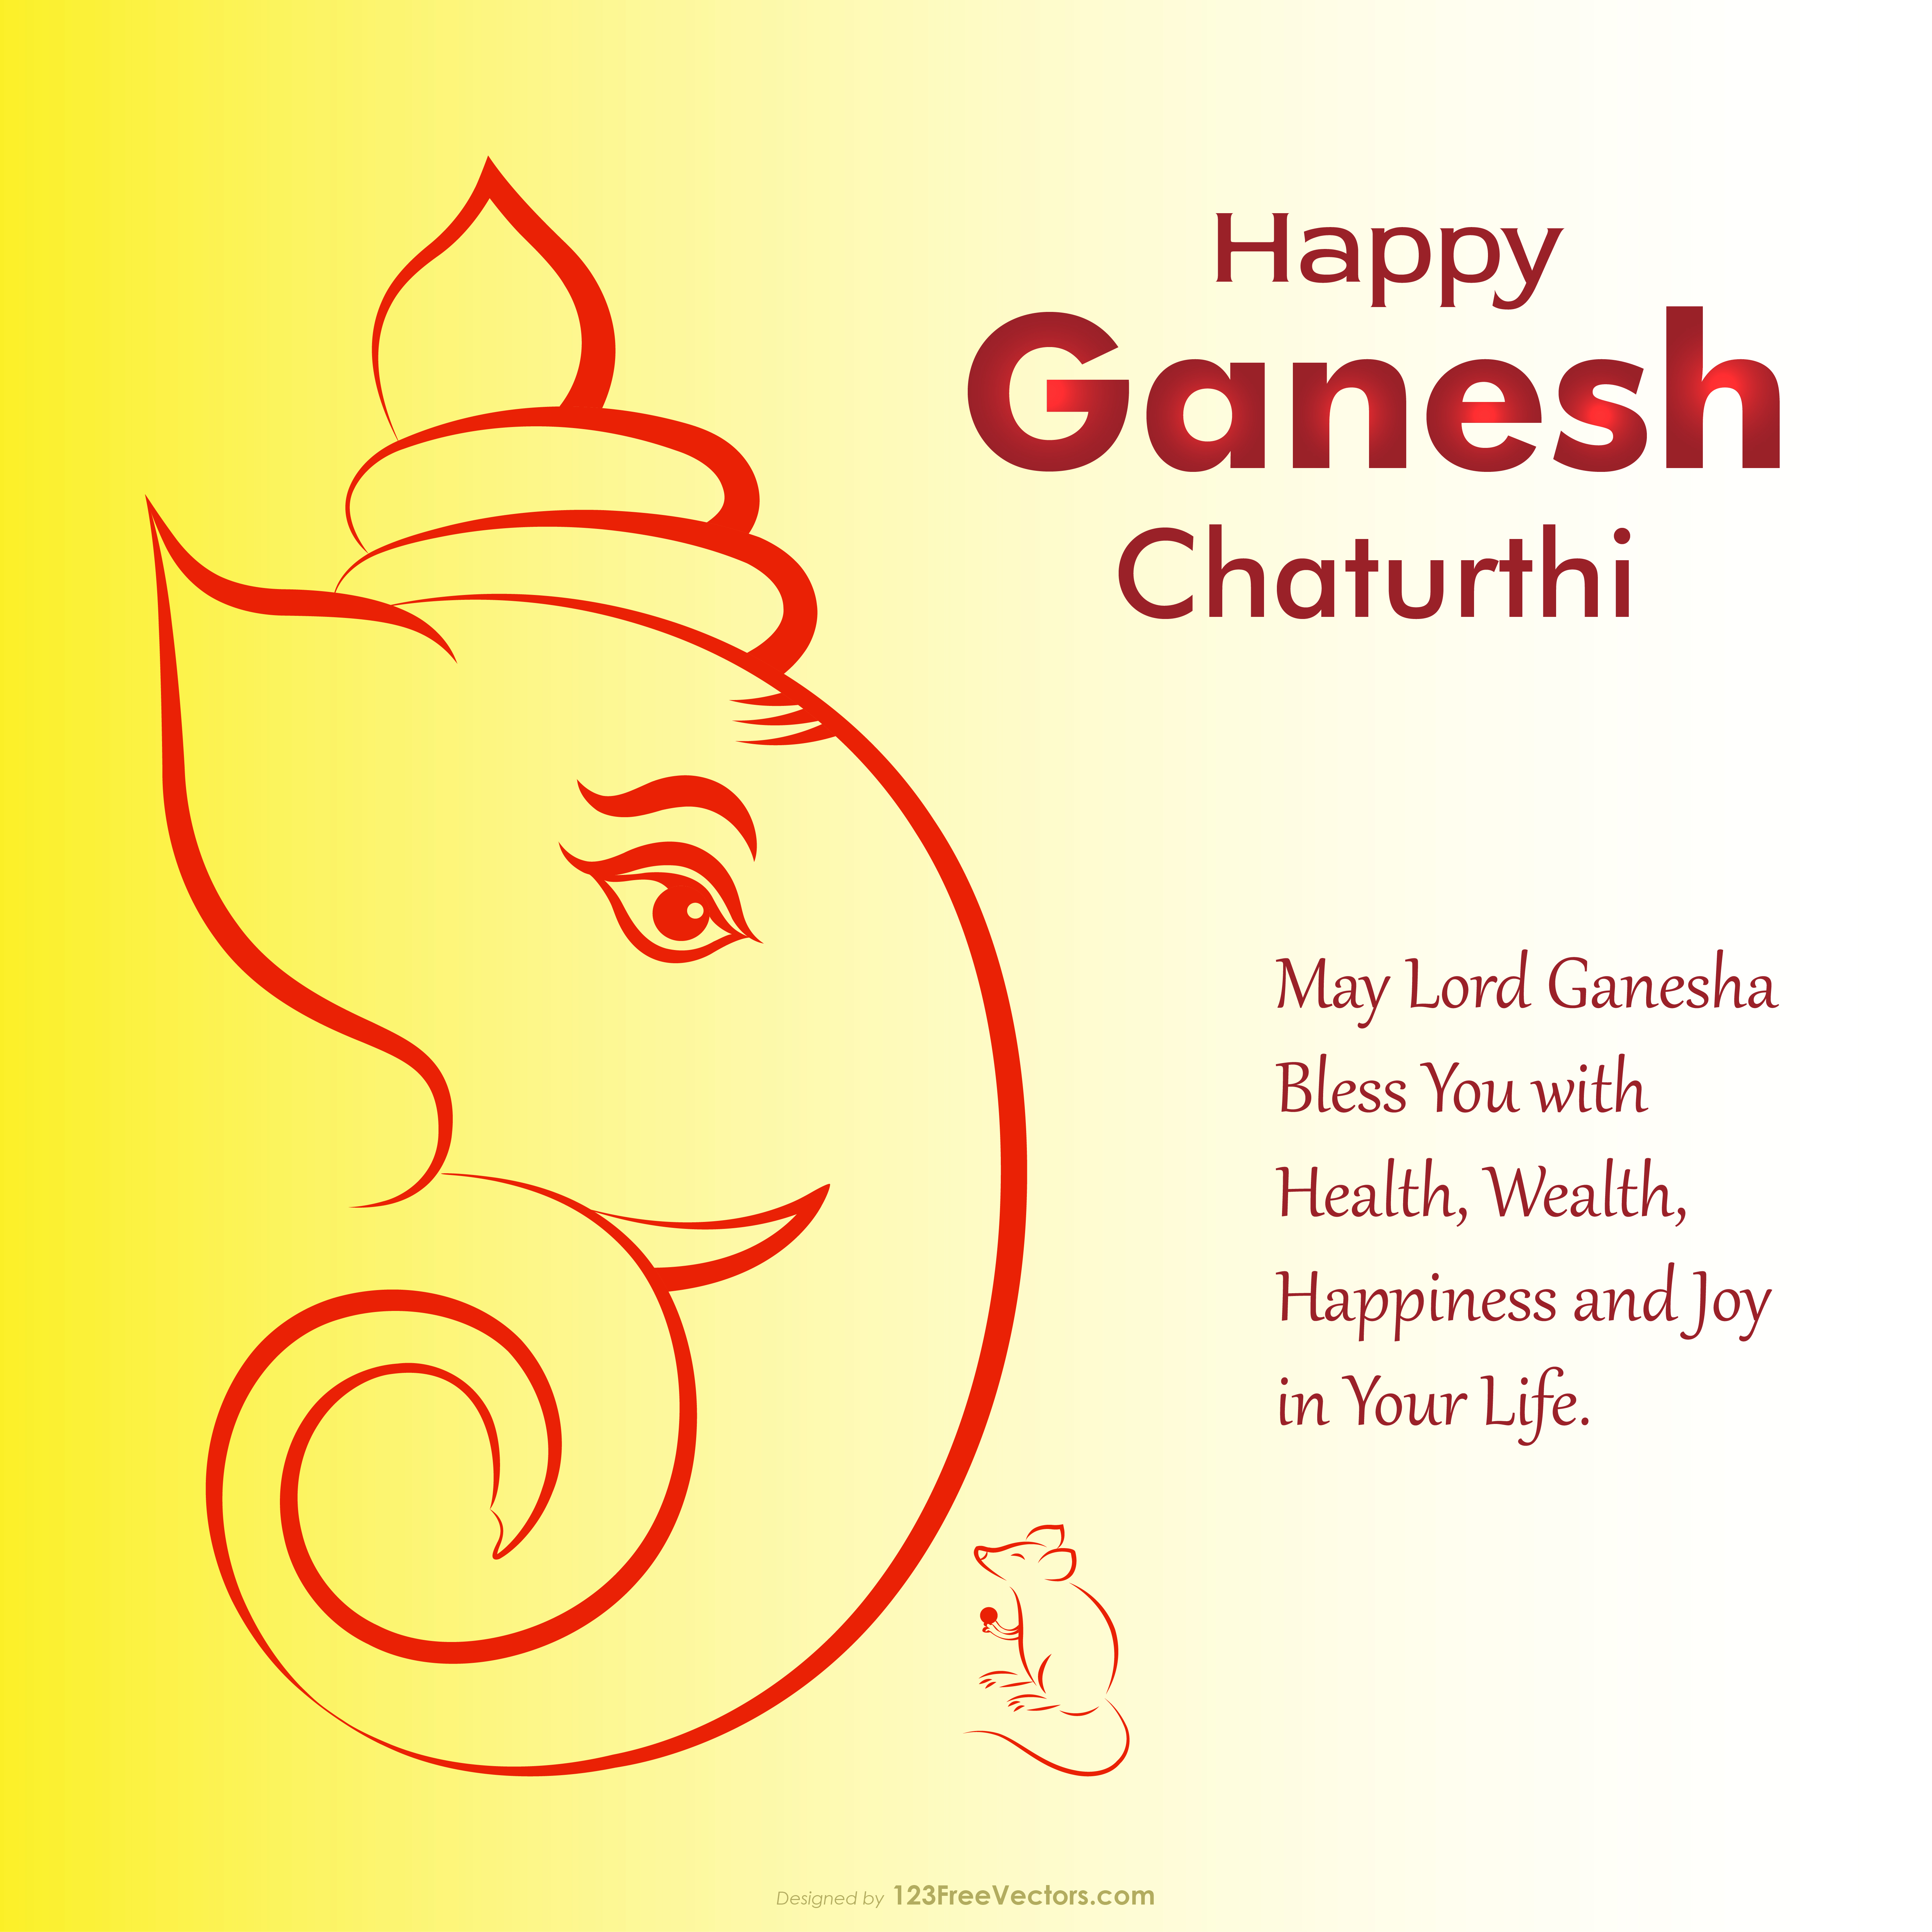 Free Happy Ganesh Chaturthi Background Image